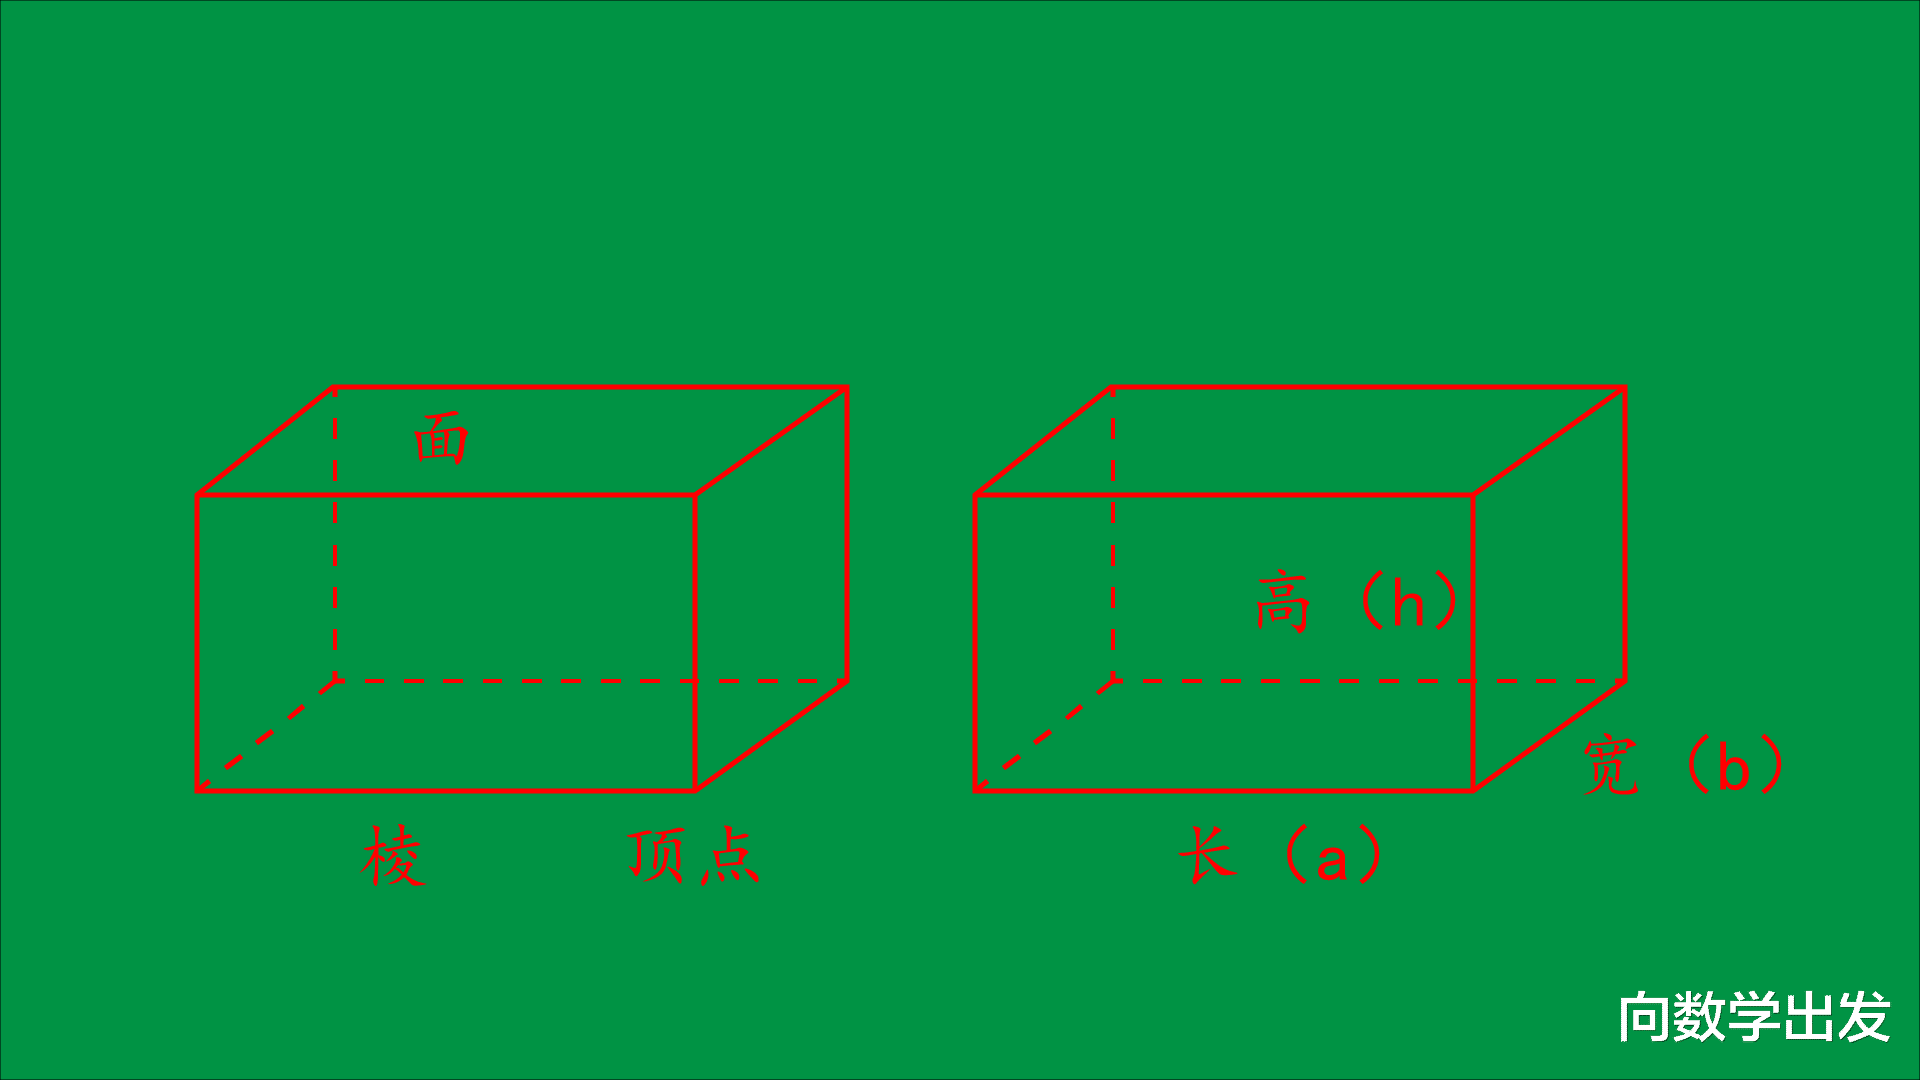 宽是长方体的宽;前后两面的长是长方体的长,宽是长方体的高;左右两面